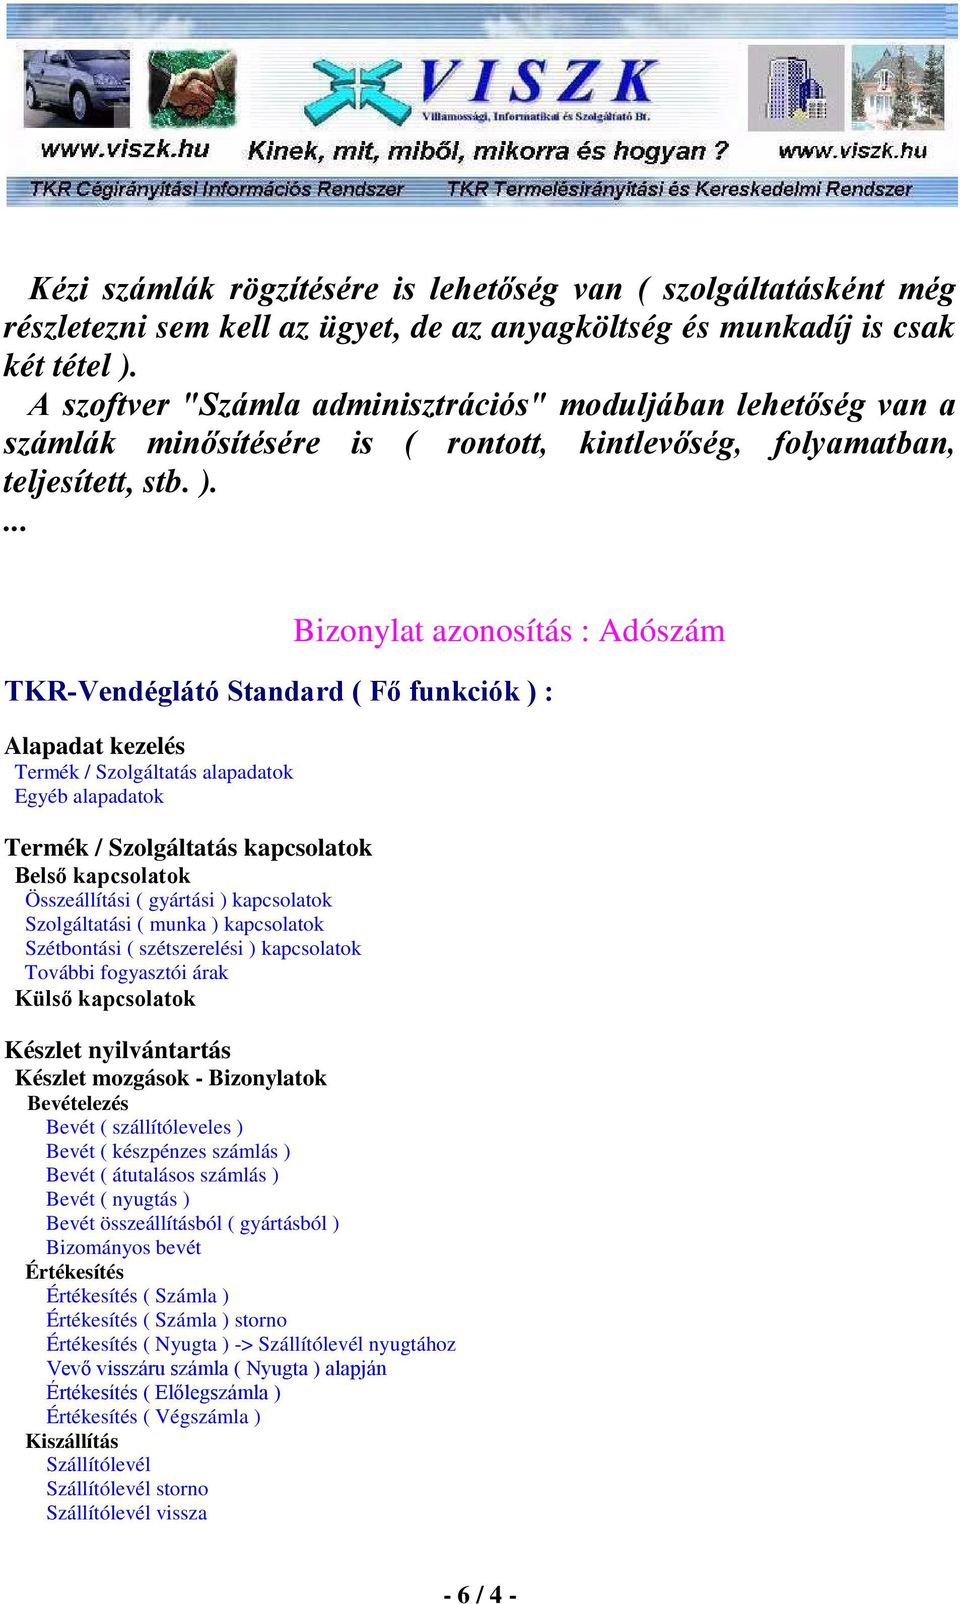 Bizonylat azonosítás : Adószám TKR-Vendéglátó Standard ( Fı funkciók ) : Alapadat kezelés Termék / Szolgáltatás alapadatok Egyéb alapadatok Termék / Szolgáltatás kapcsolatok Belsı kapcsolatok